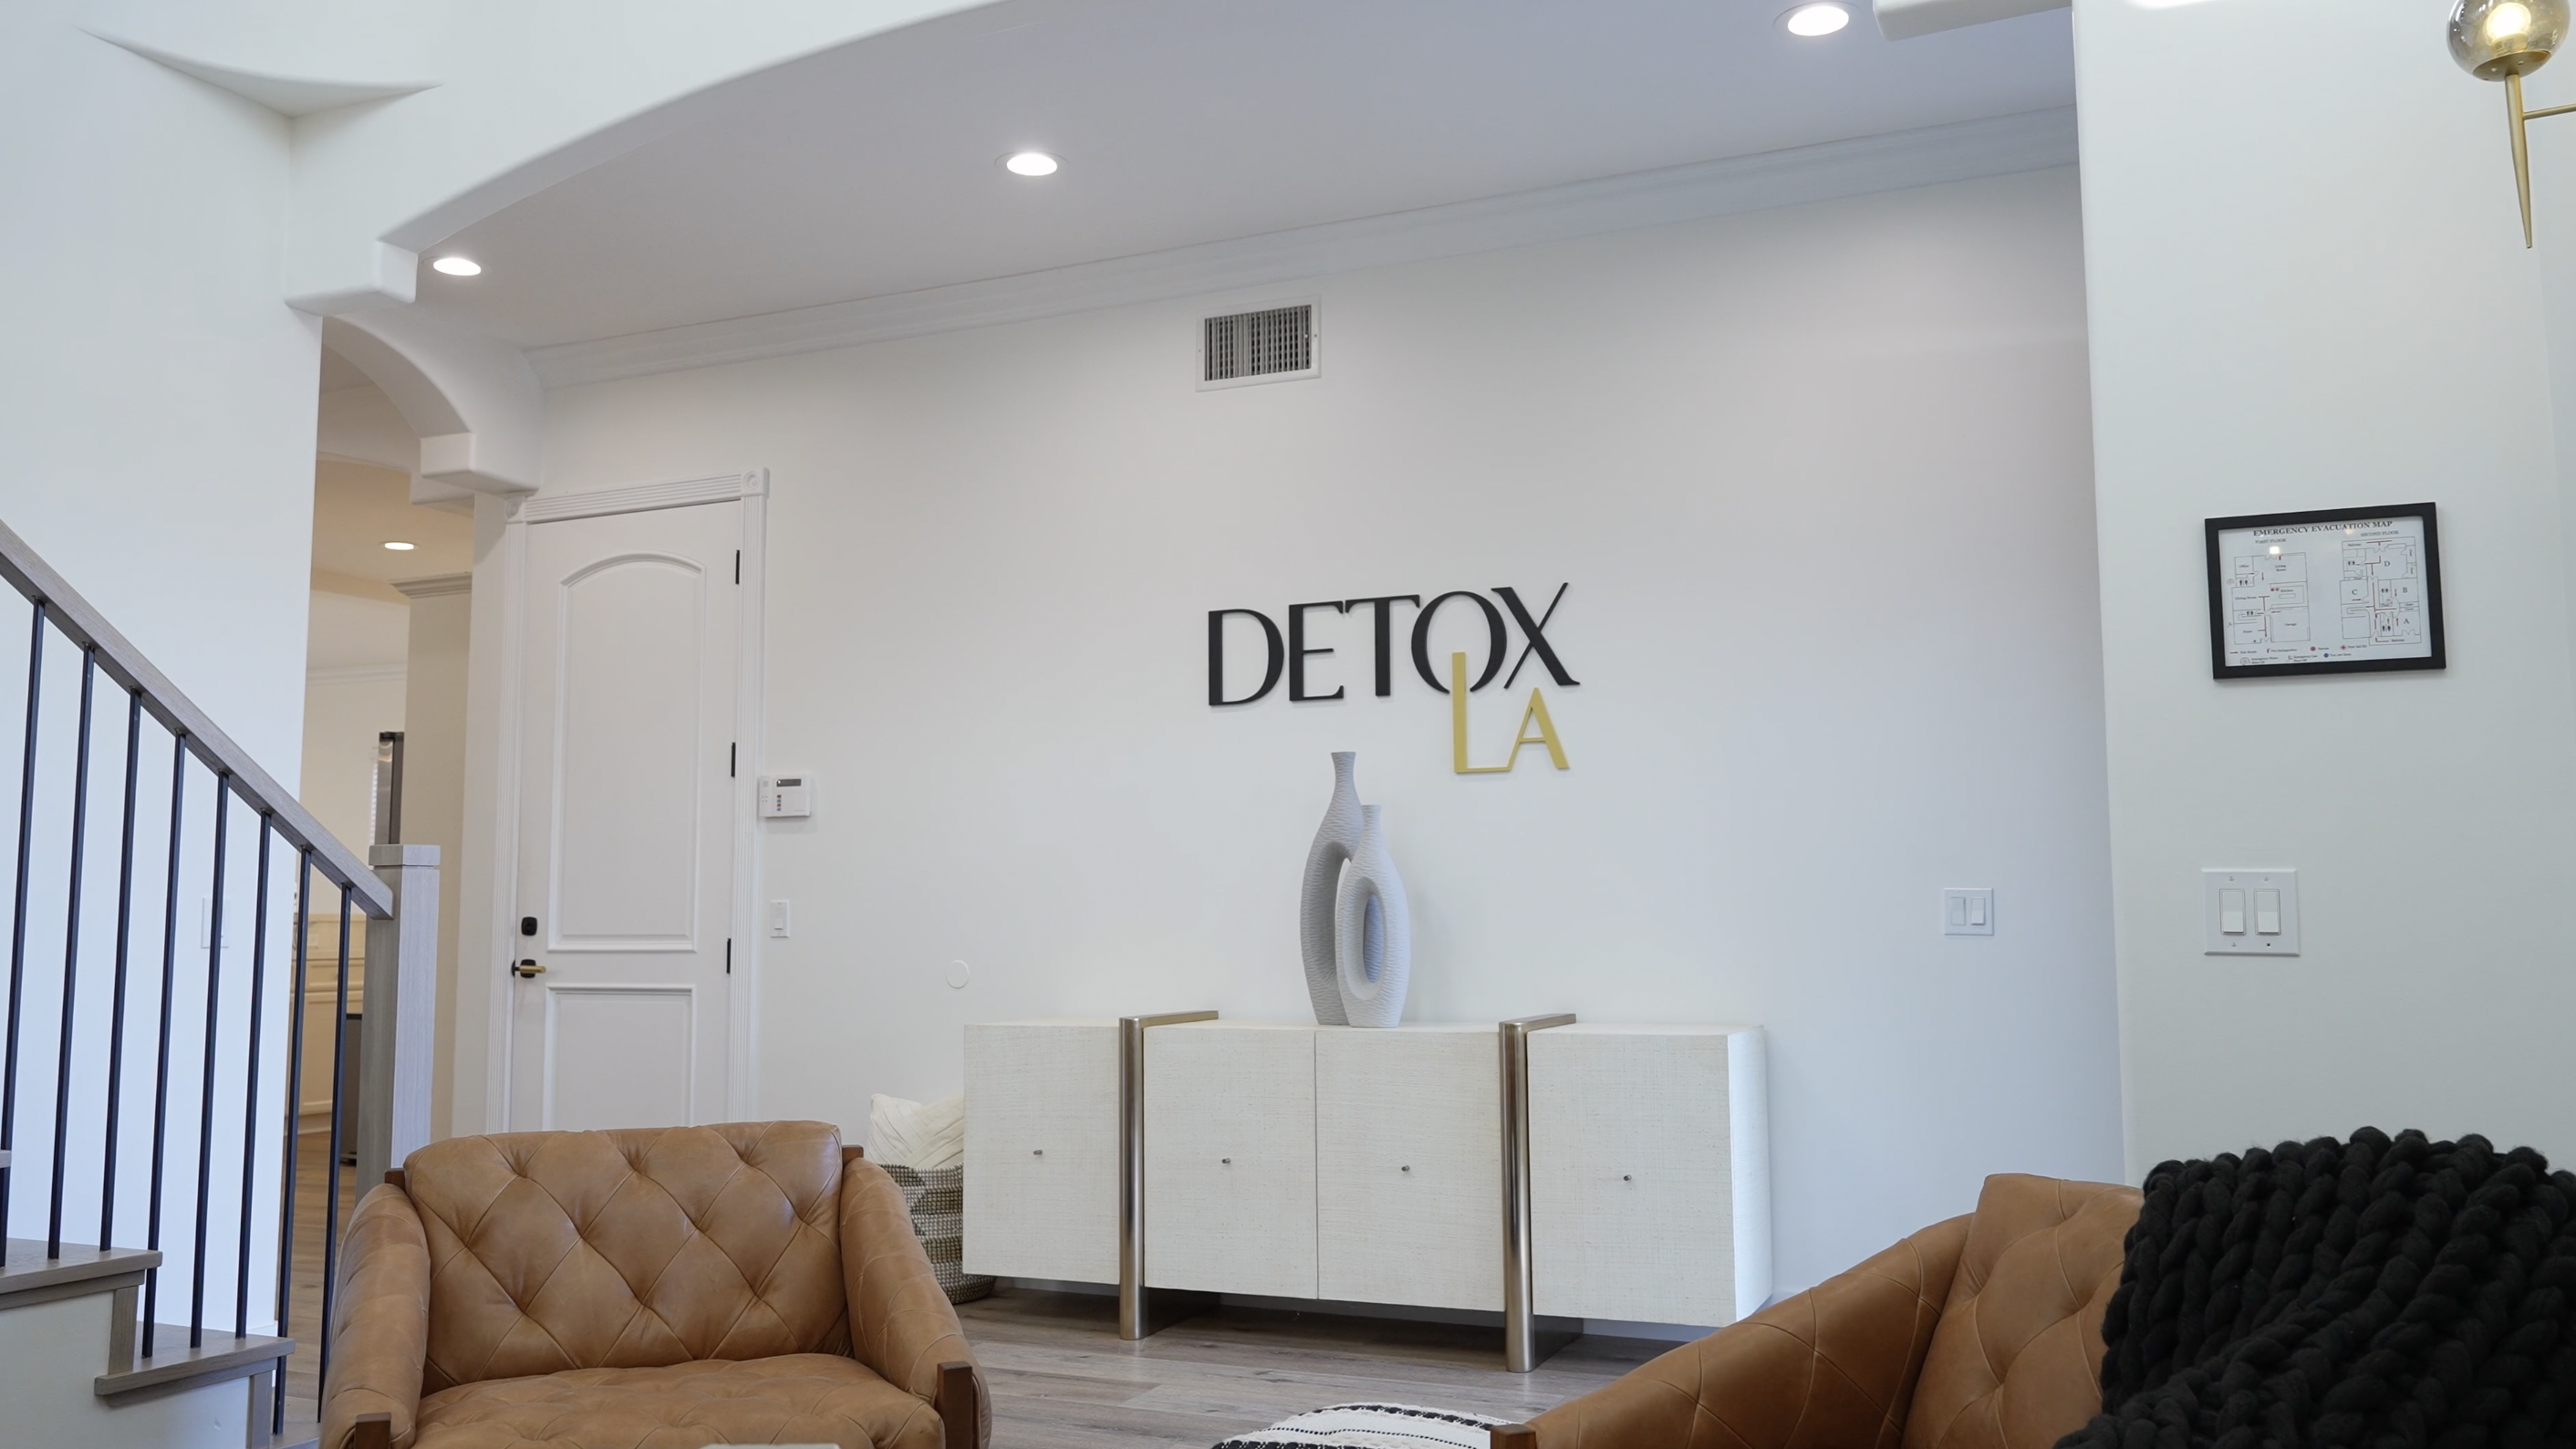 interior photo of Detox LA Facility showing entryway